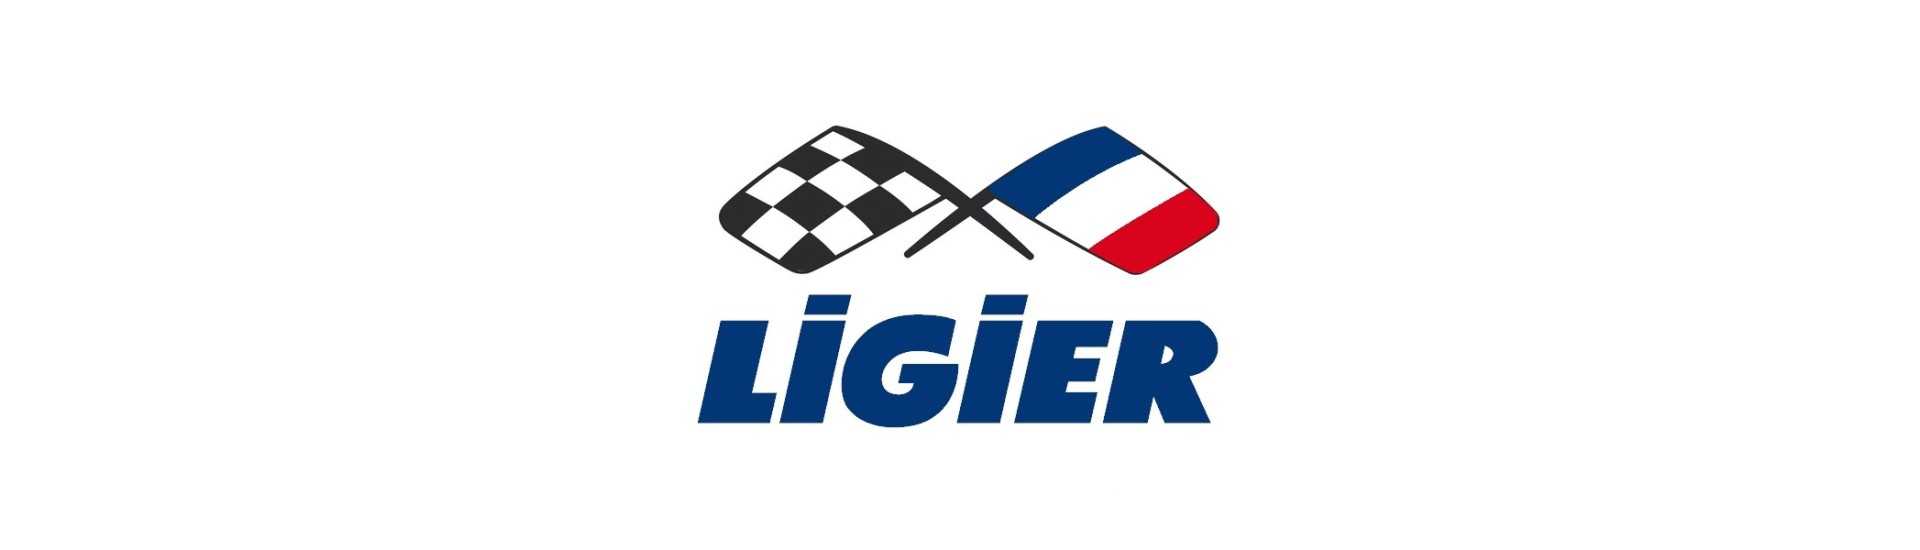 Silent bloc moteur au meilleur prix pour voiture sans permis Ligier